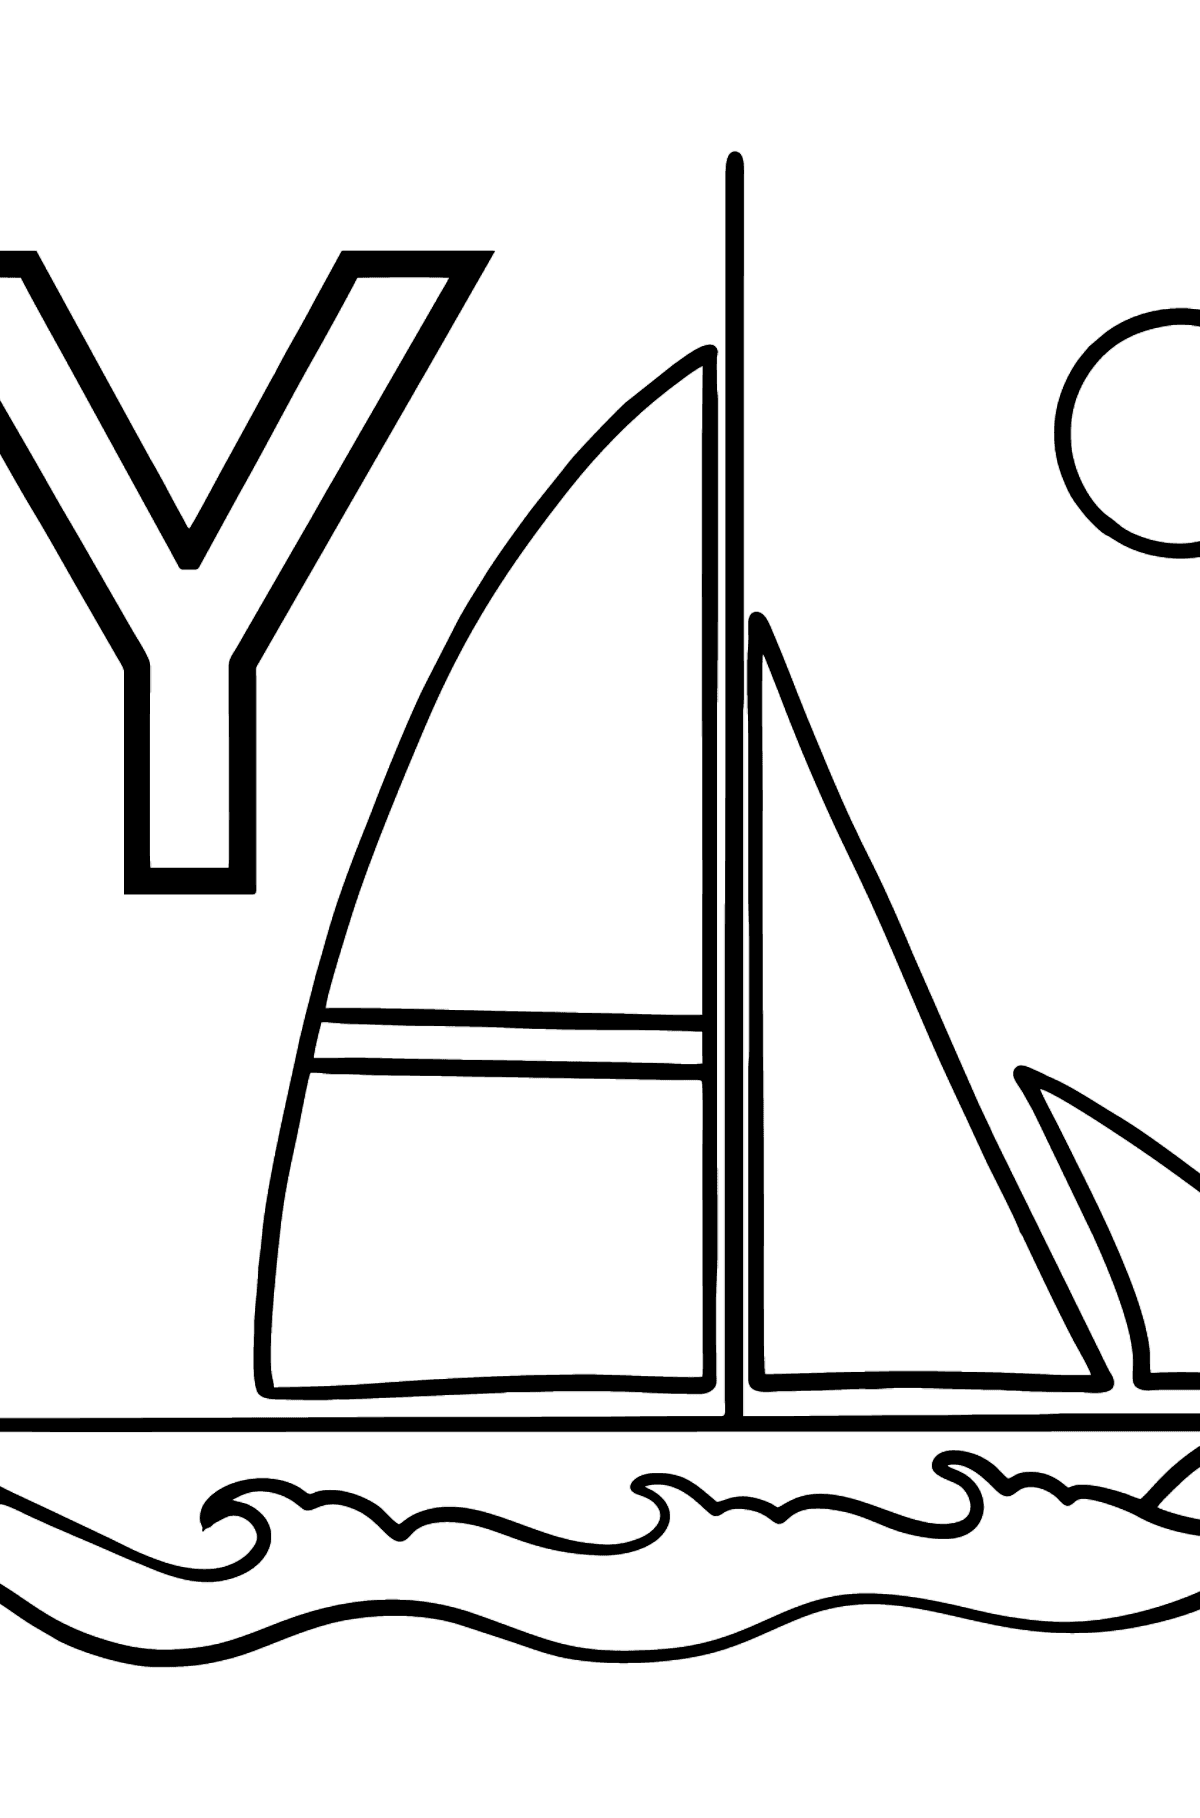 Раскраска Буква Y немецкого алфавита - YACHT - Картинки для Детей